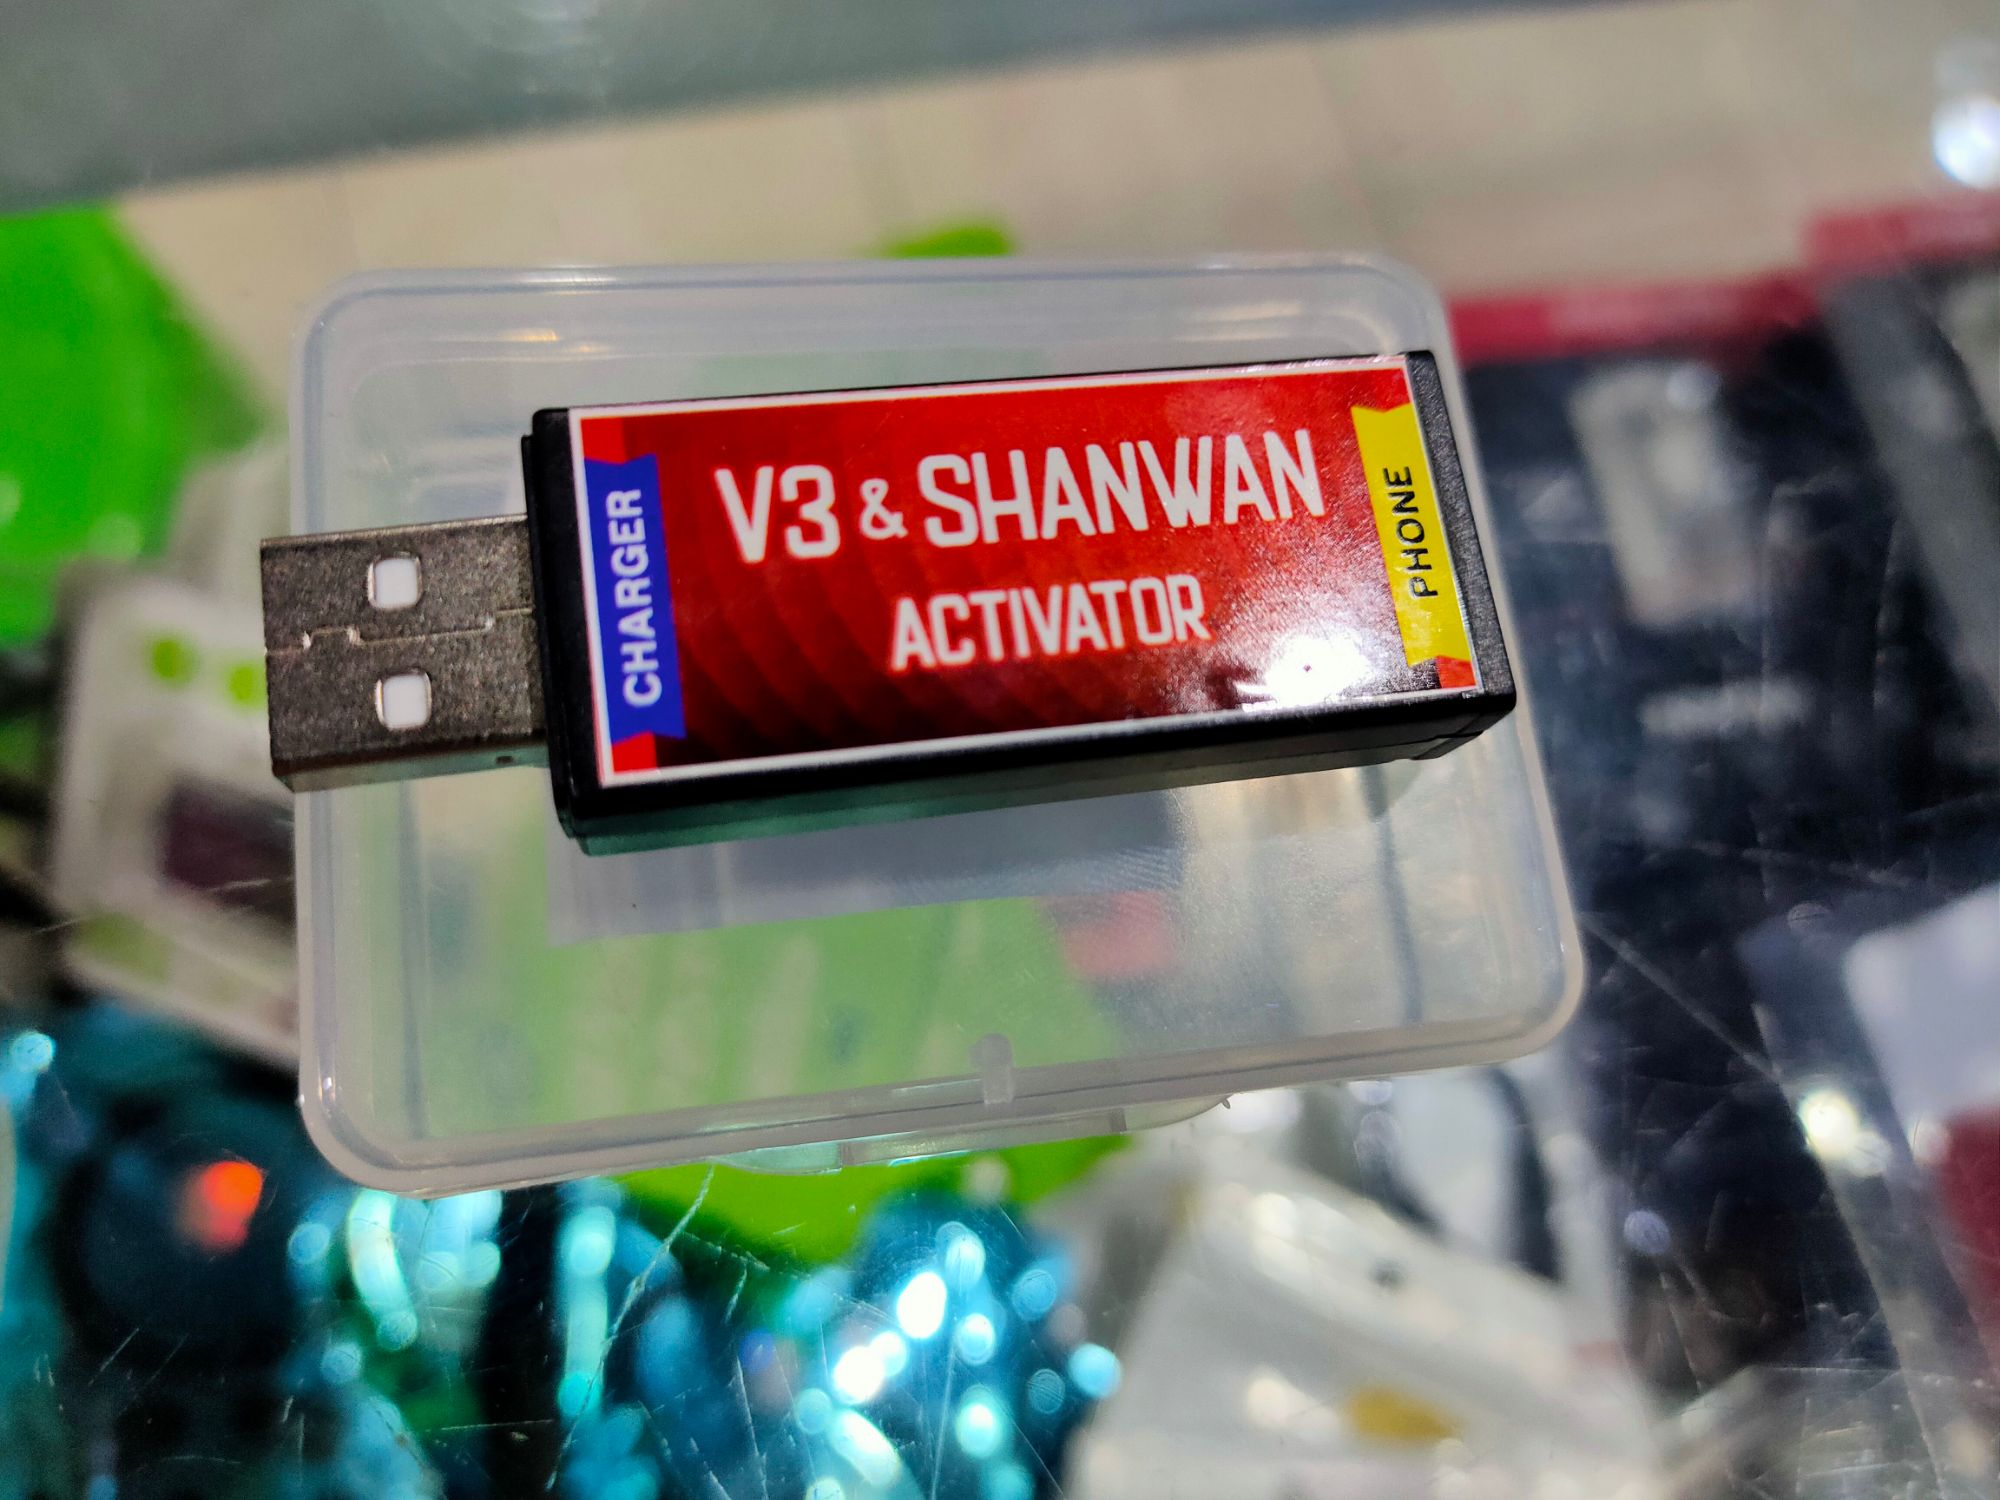 Shanwan. Wireless Doubles Drive Shanwan. Андроид активатор